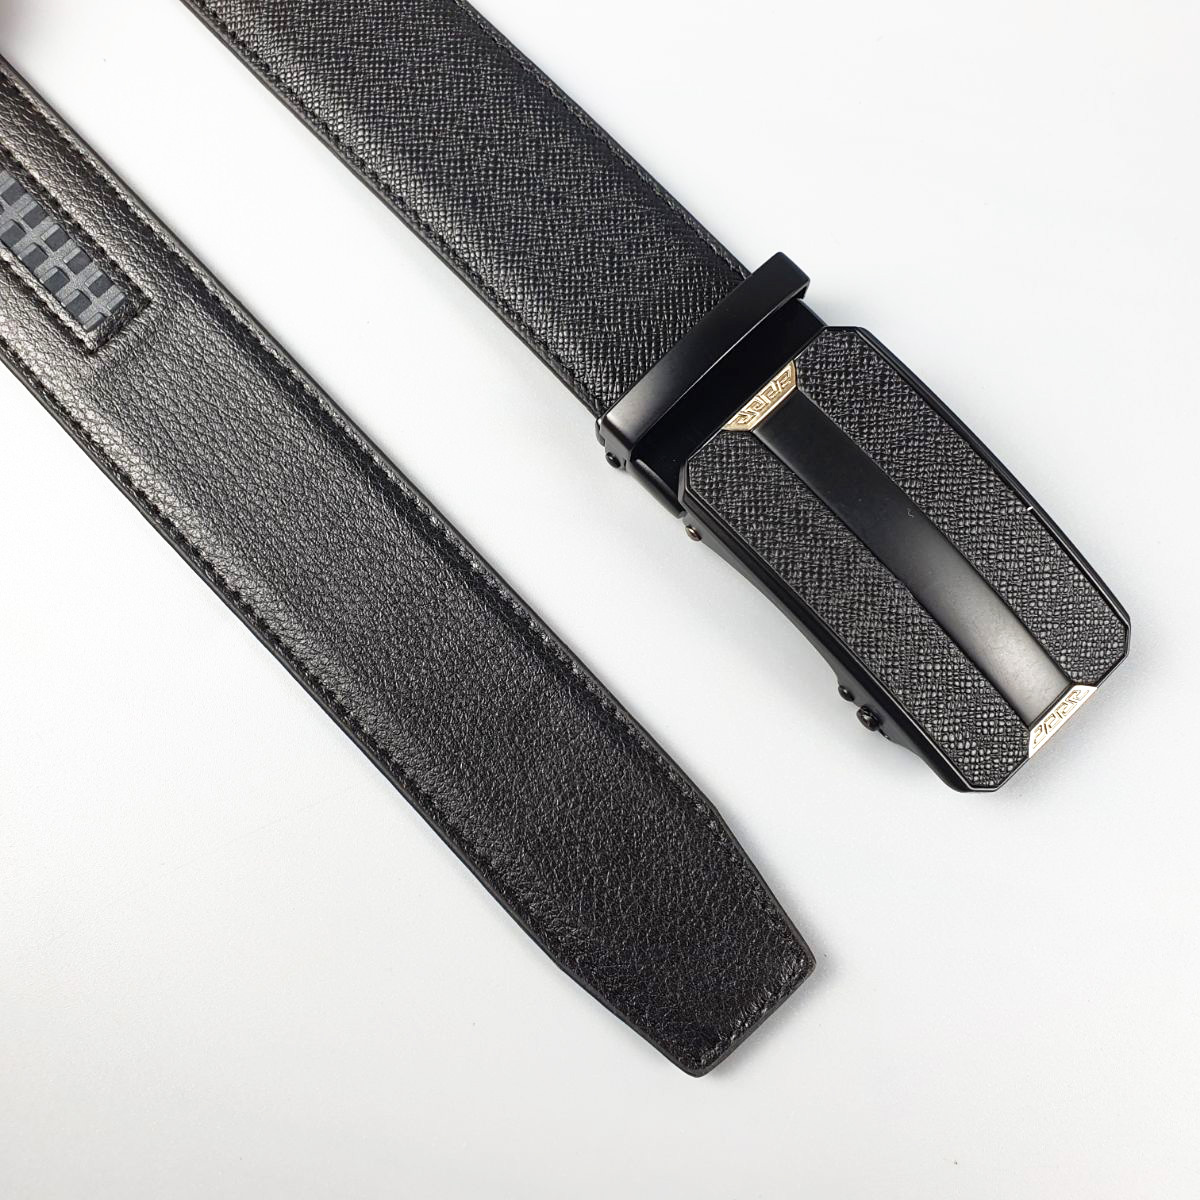 Thắt lưng nam dây nịt khóa trượt dây lưng chất liệu da bò Safiano 3 lớp thời trang thanh lịch phù hợp công sở BL118